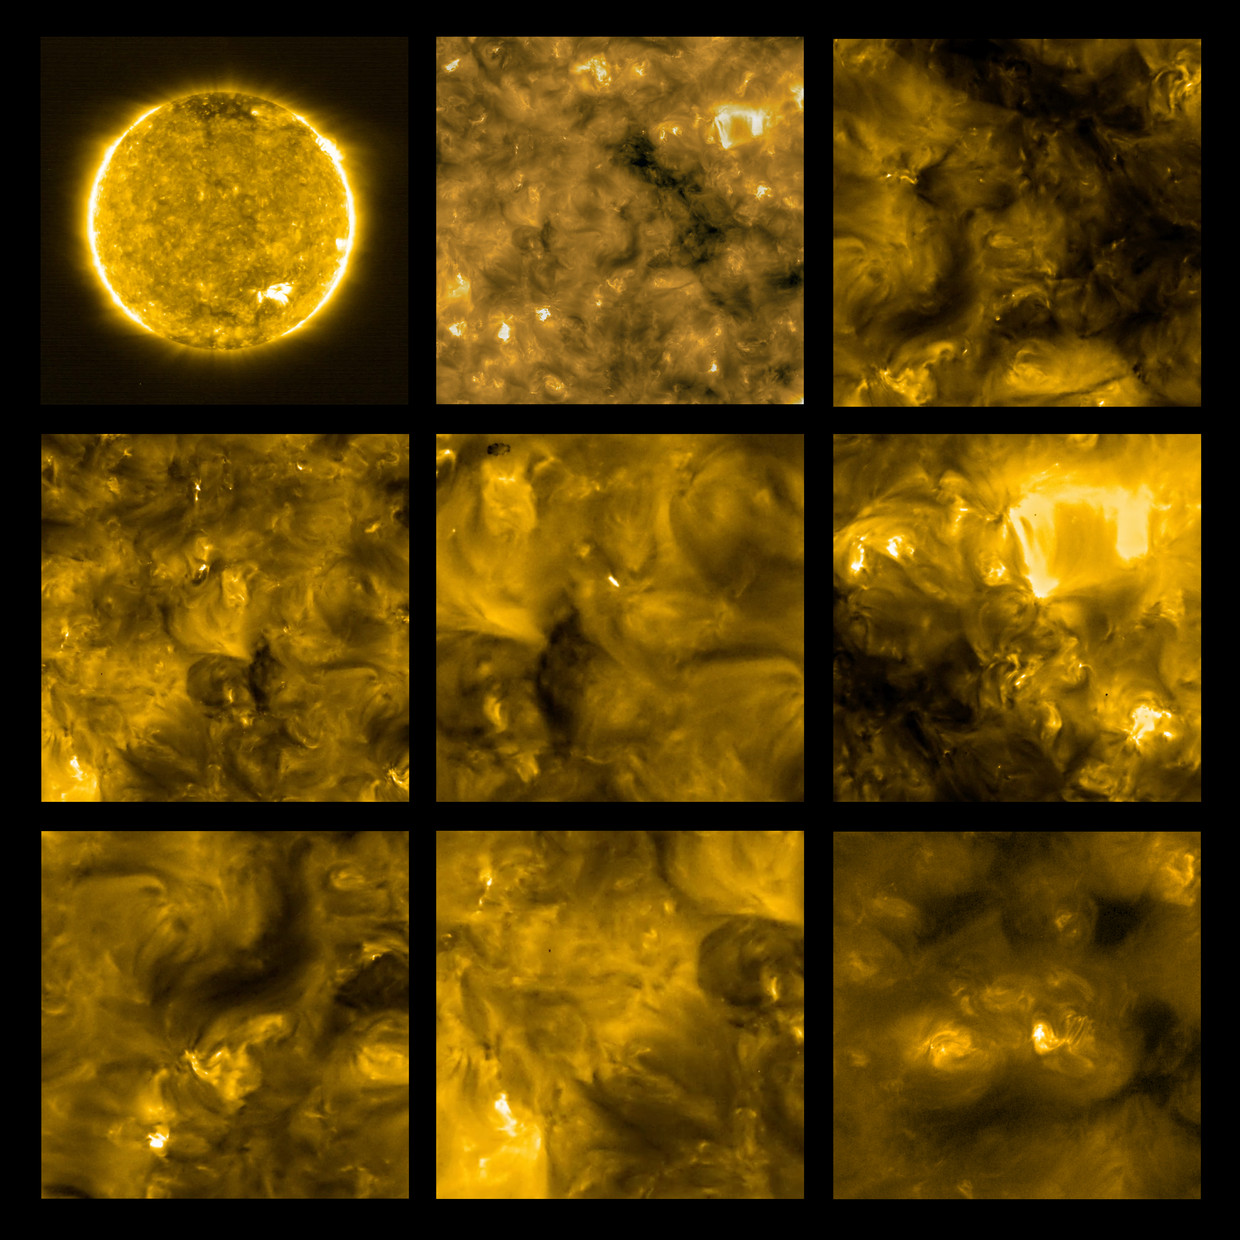 Tussen de wolken op het oppervlak van de zon duiken felle witte puntjes op. Alsof je vanuit de lucht kampvuurtjes ziet, maar het zijn kleine zonnevlammen, een miljoen keer kleiner dan de vlammen die je vanaf aarde kunt waarnemen. Beeld Solar Orbiter/EUI Team (ESA & NASA); CSL, IAS, MPS, PMOD/WRC, ROB, UCL/MSSL